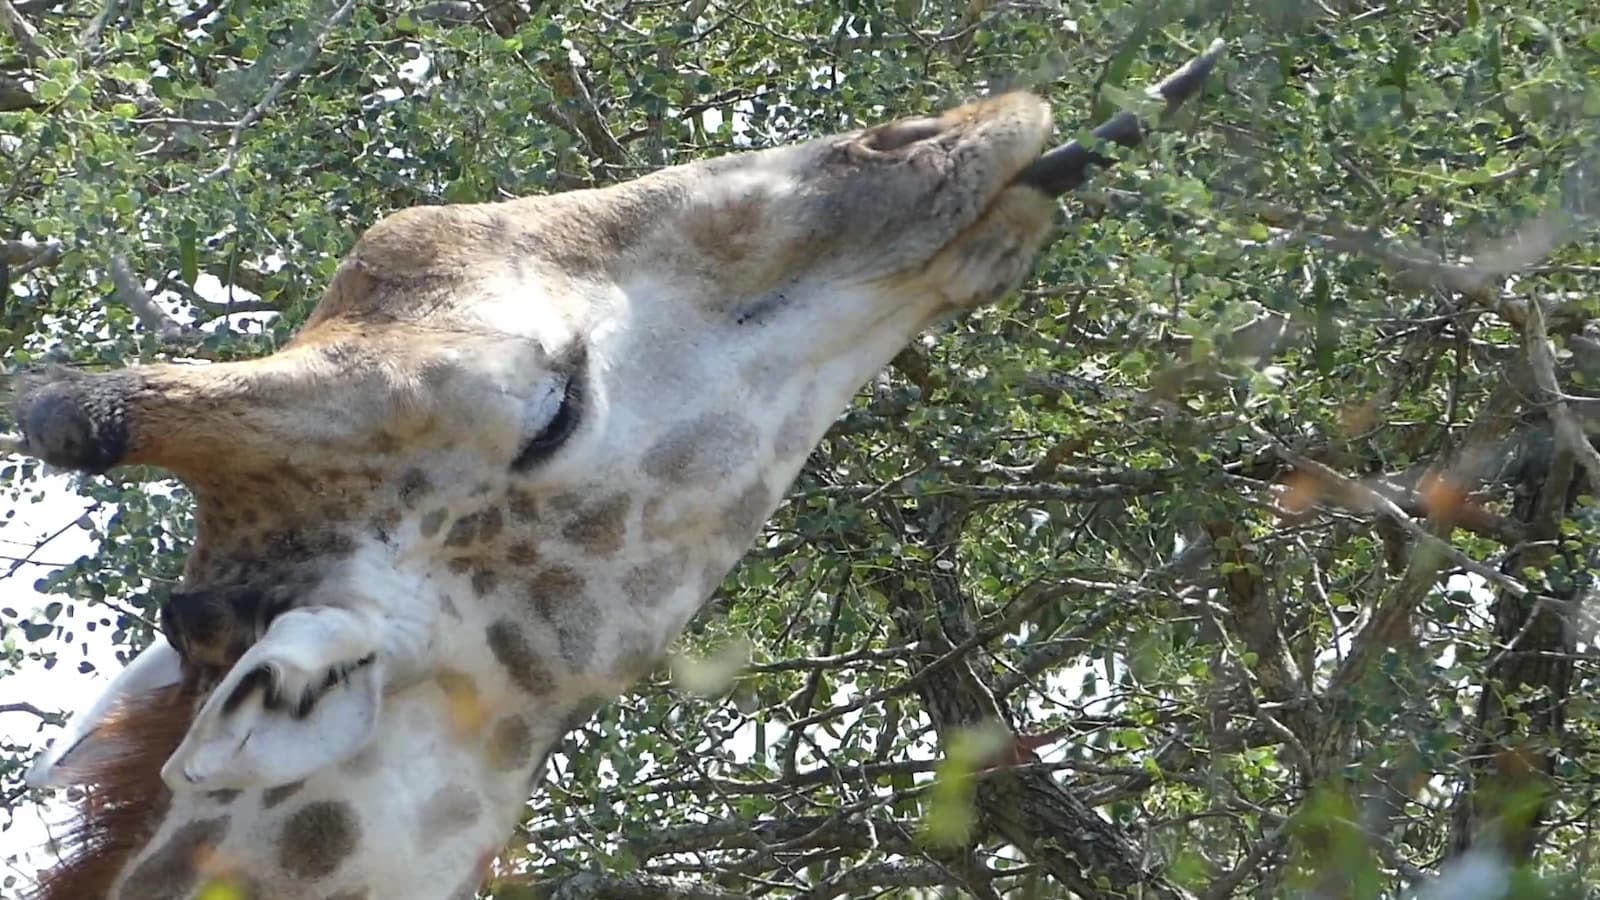 Giraffe eating Acacia trees with its long tongue